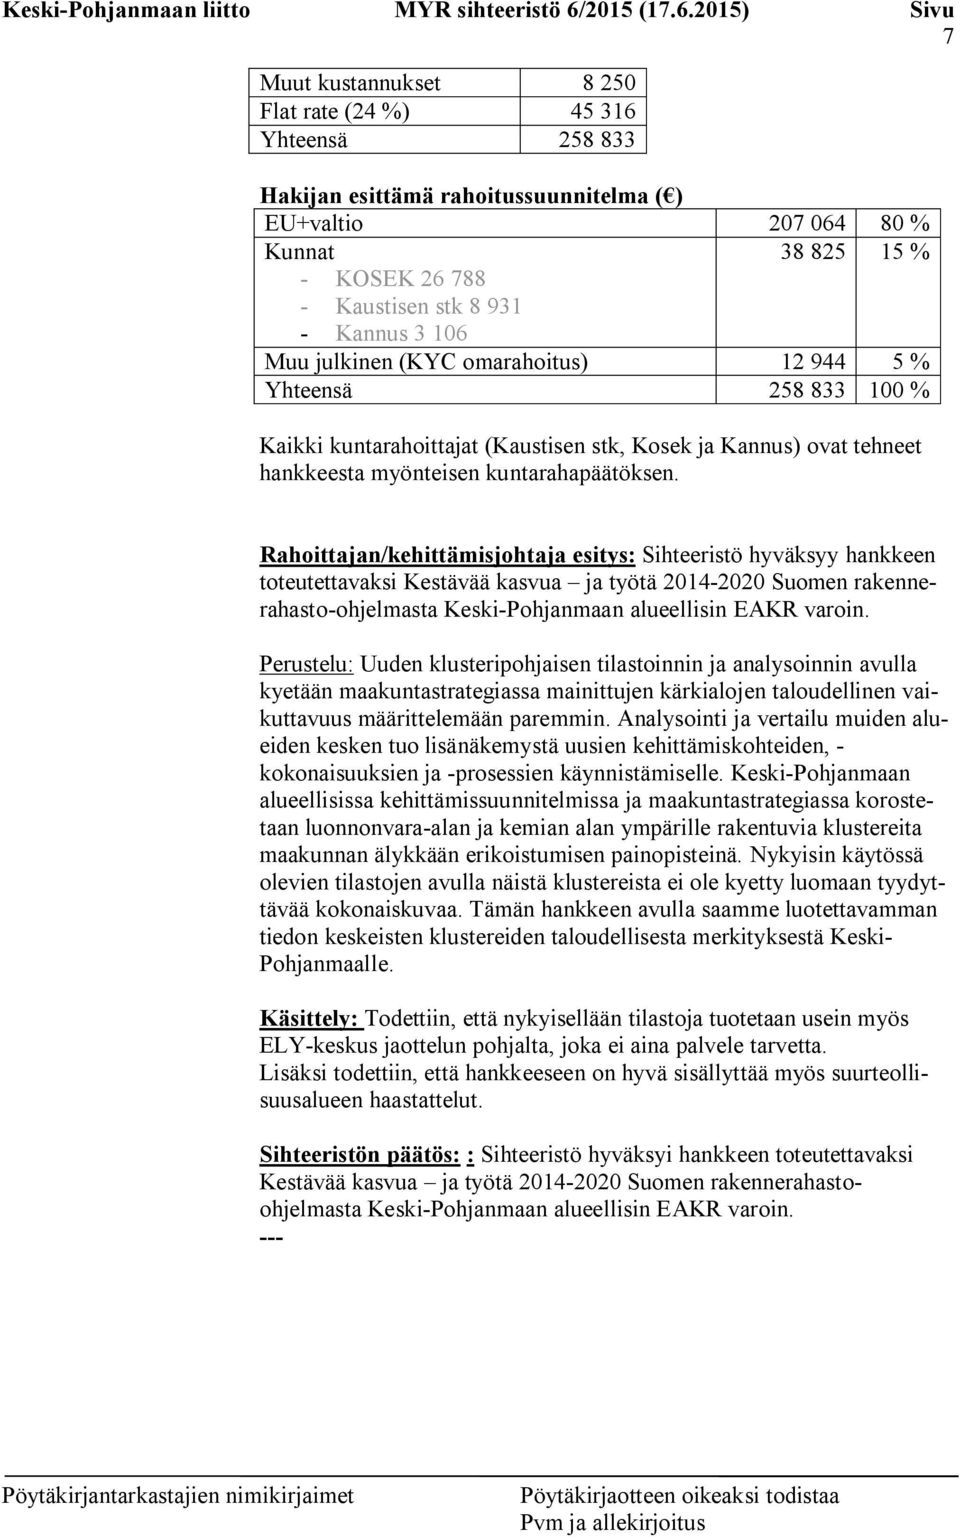 Rahoittajan/kehittämisjohtaja esitys: Sihteeristö hyväksyy hankkeen toteutettavaksi Kestävää kasvua ja työtä 2014-2020 Suomen rakennerahasto-ohjelmasta Keski-Pohjanmaan alueellisin EAKR varoin.